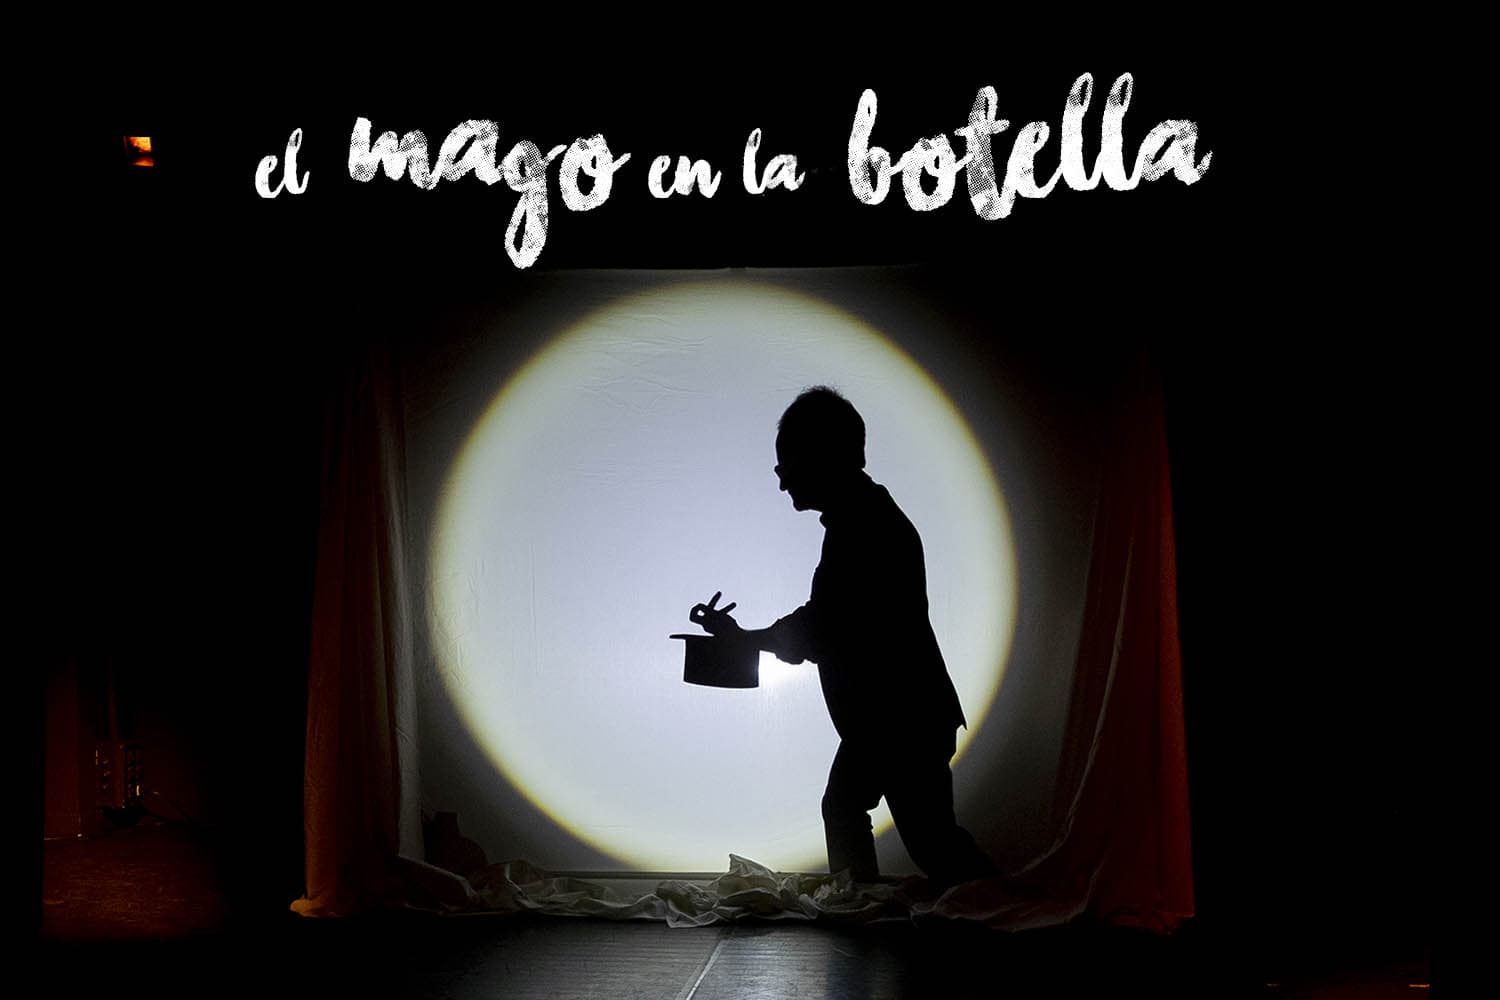 El mago en la botella y otras historias de magia